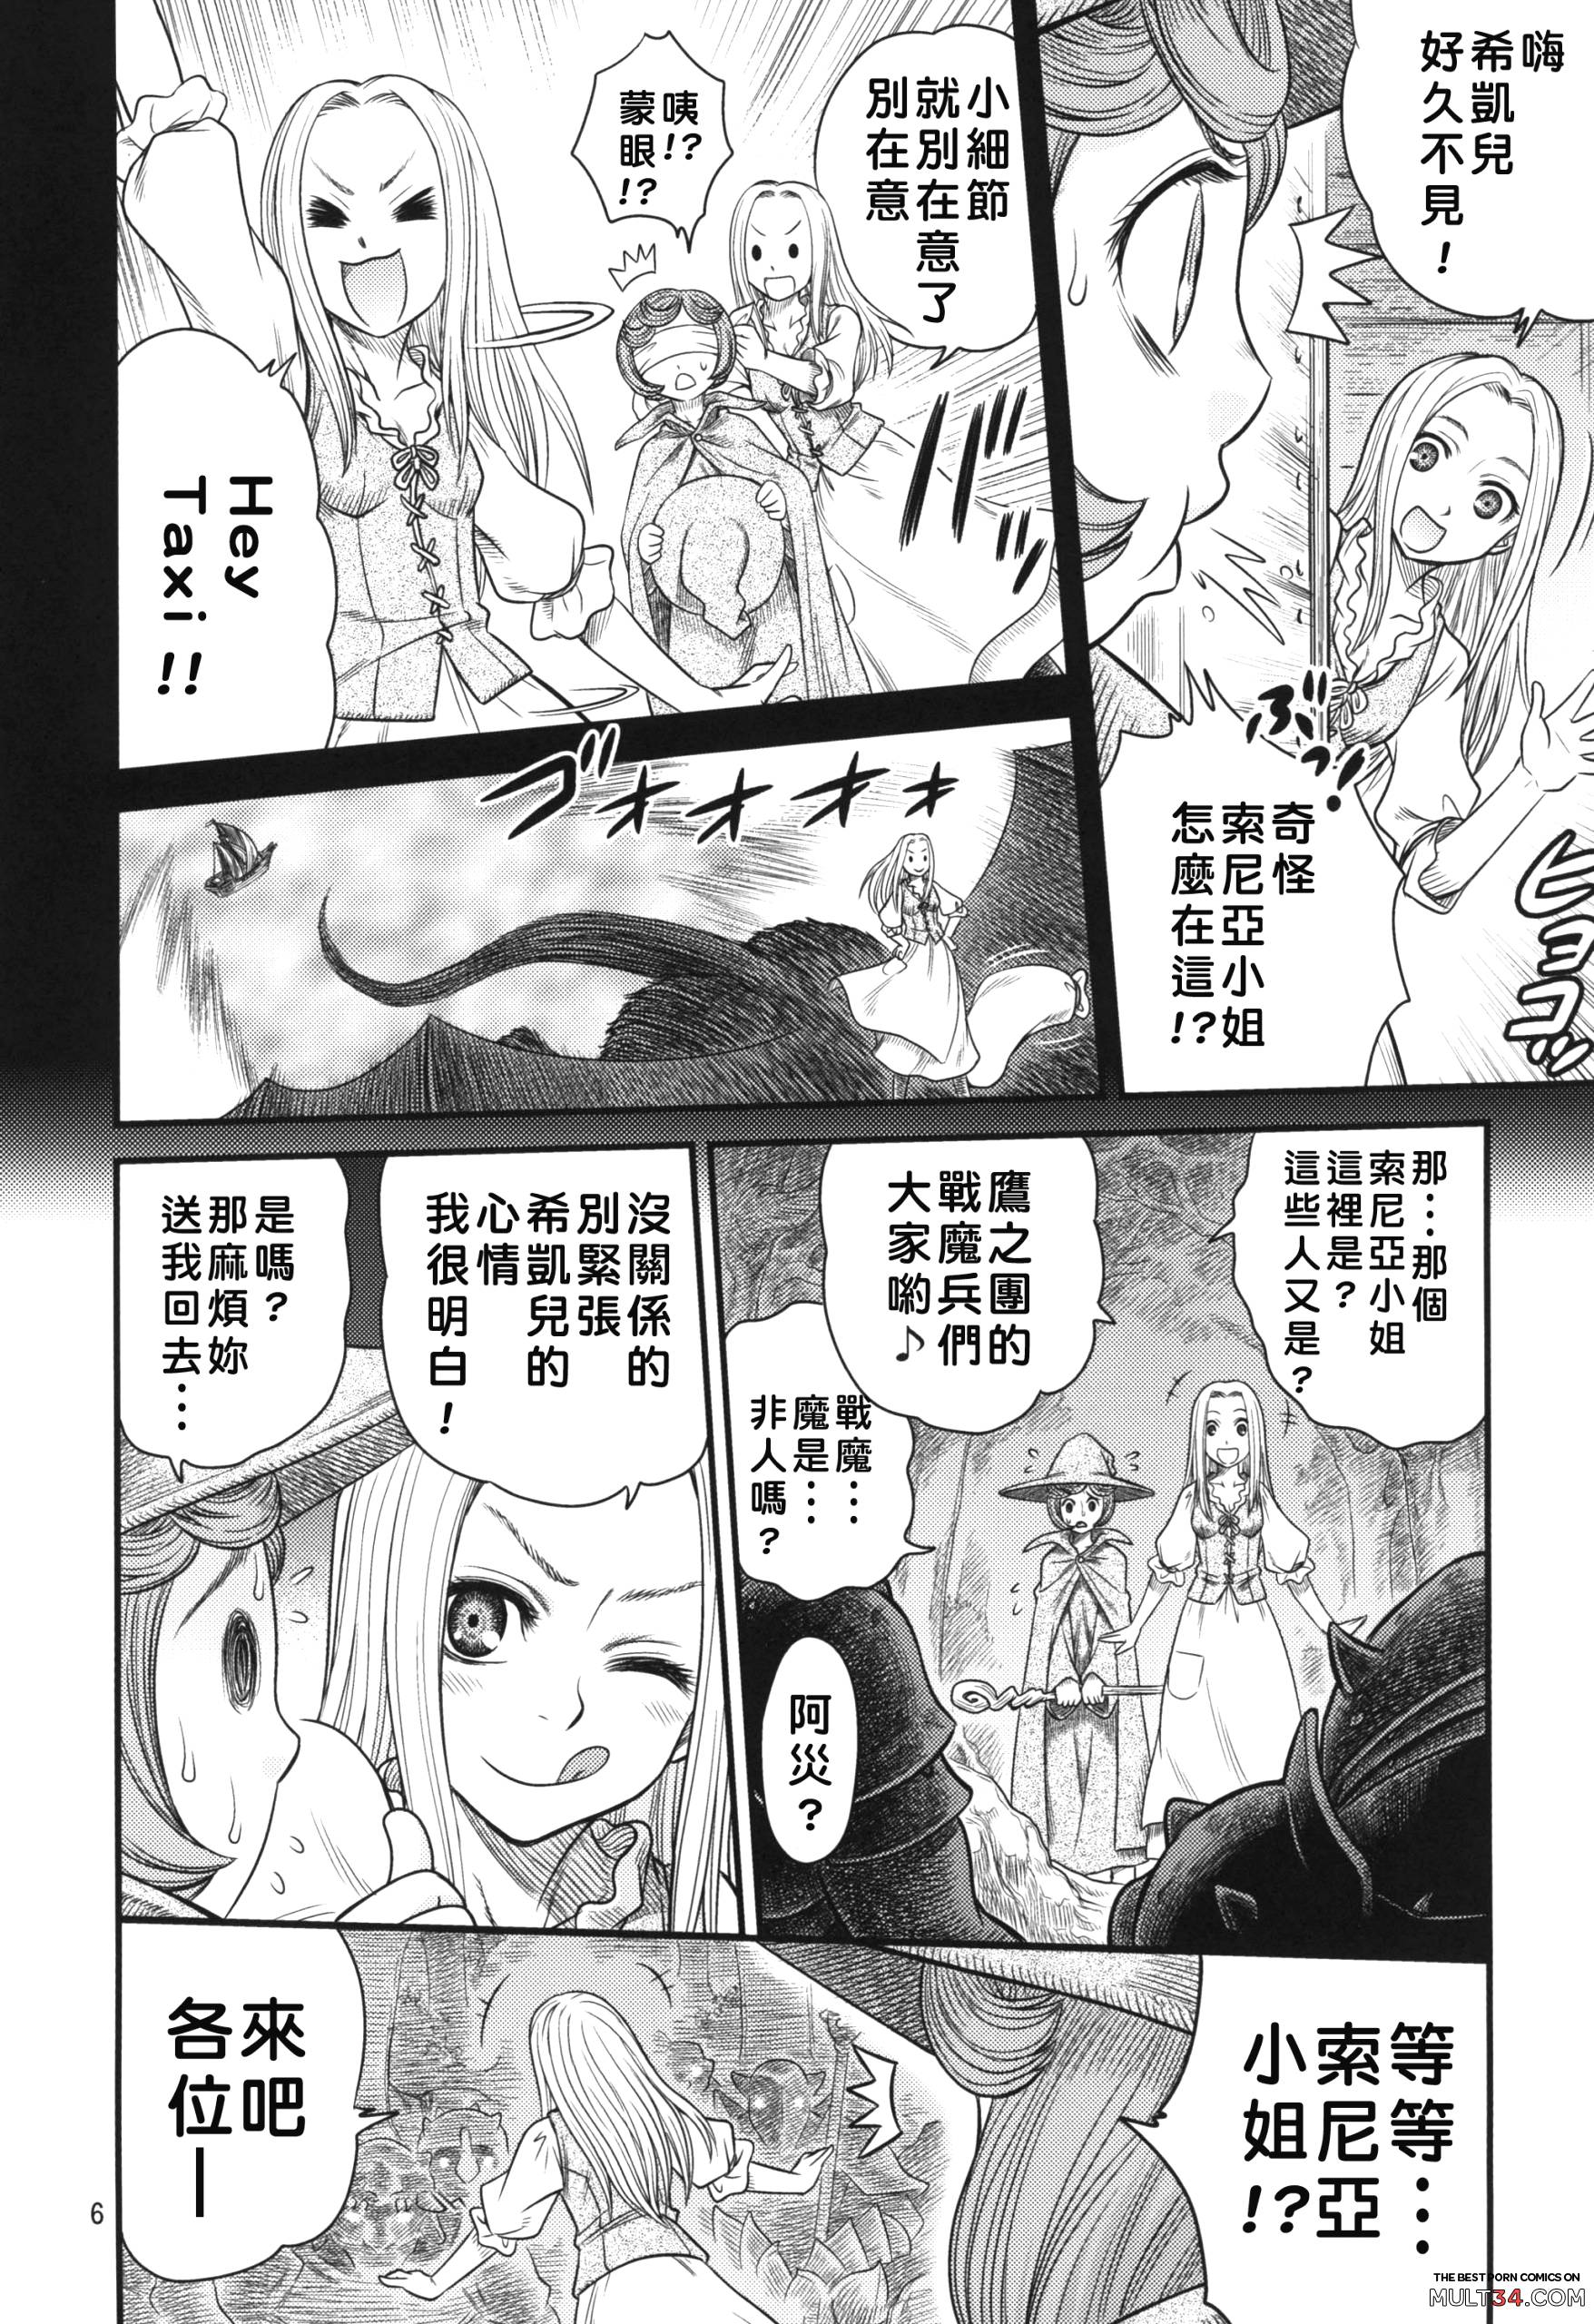 Kuru Kuru Sonia!! page 5